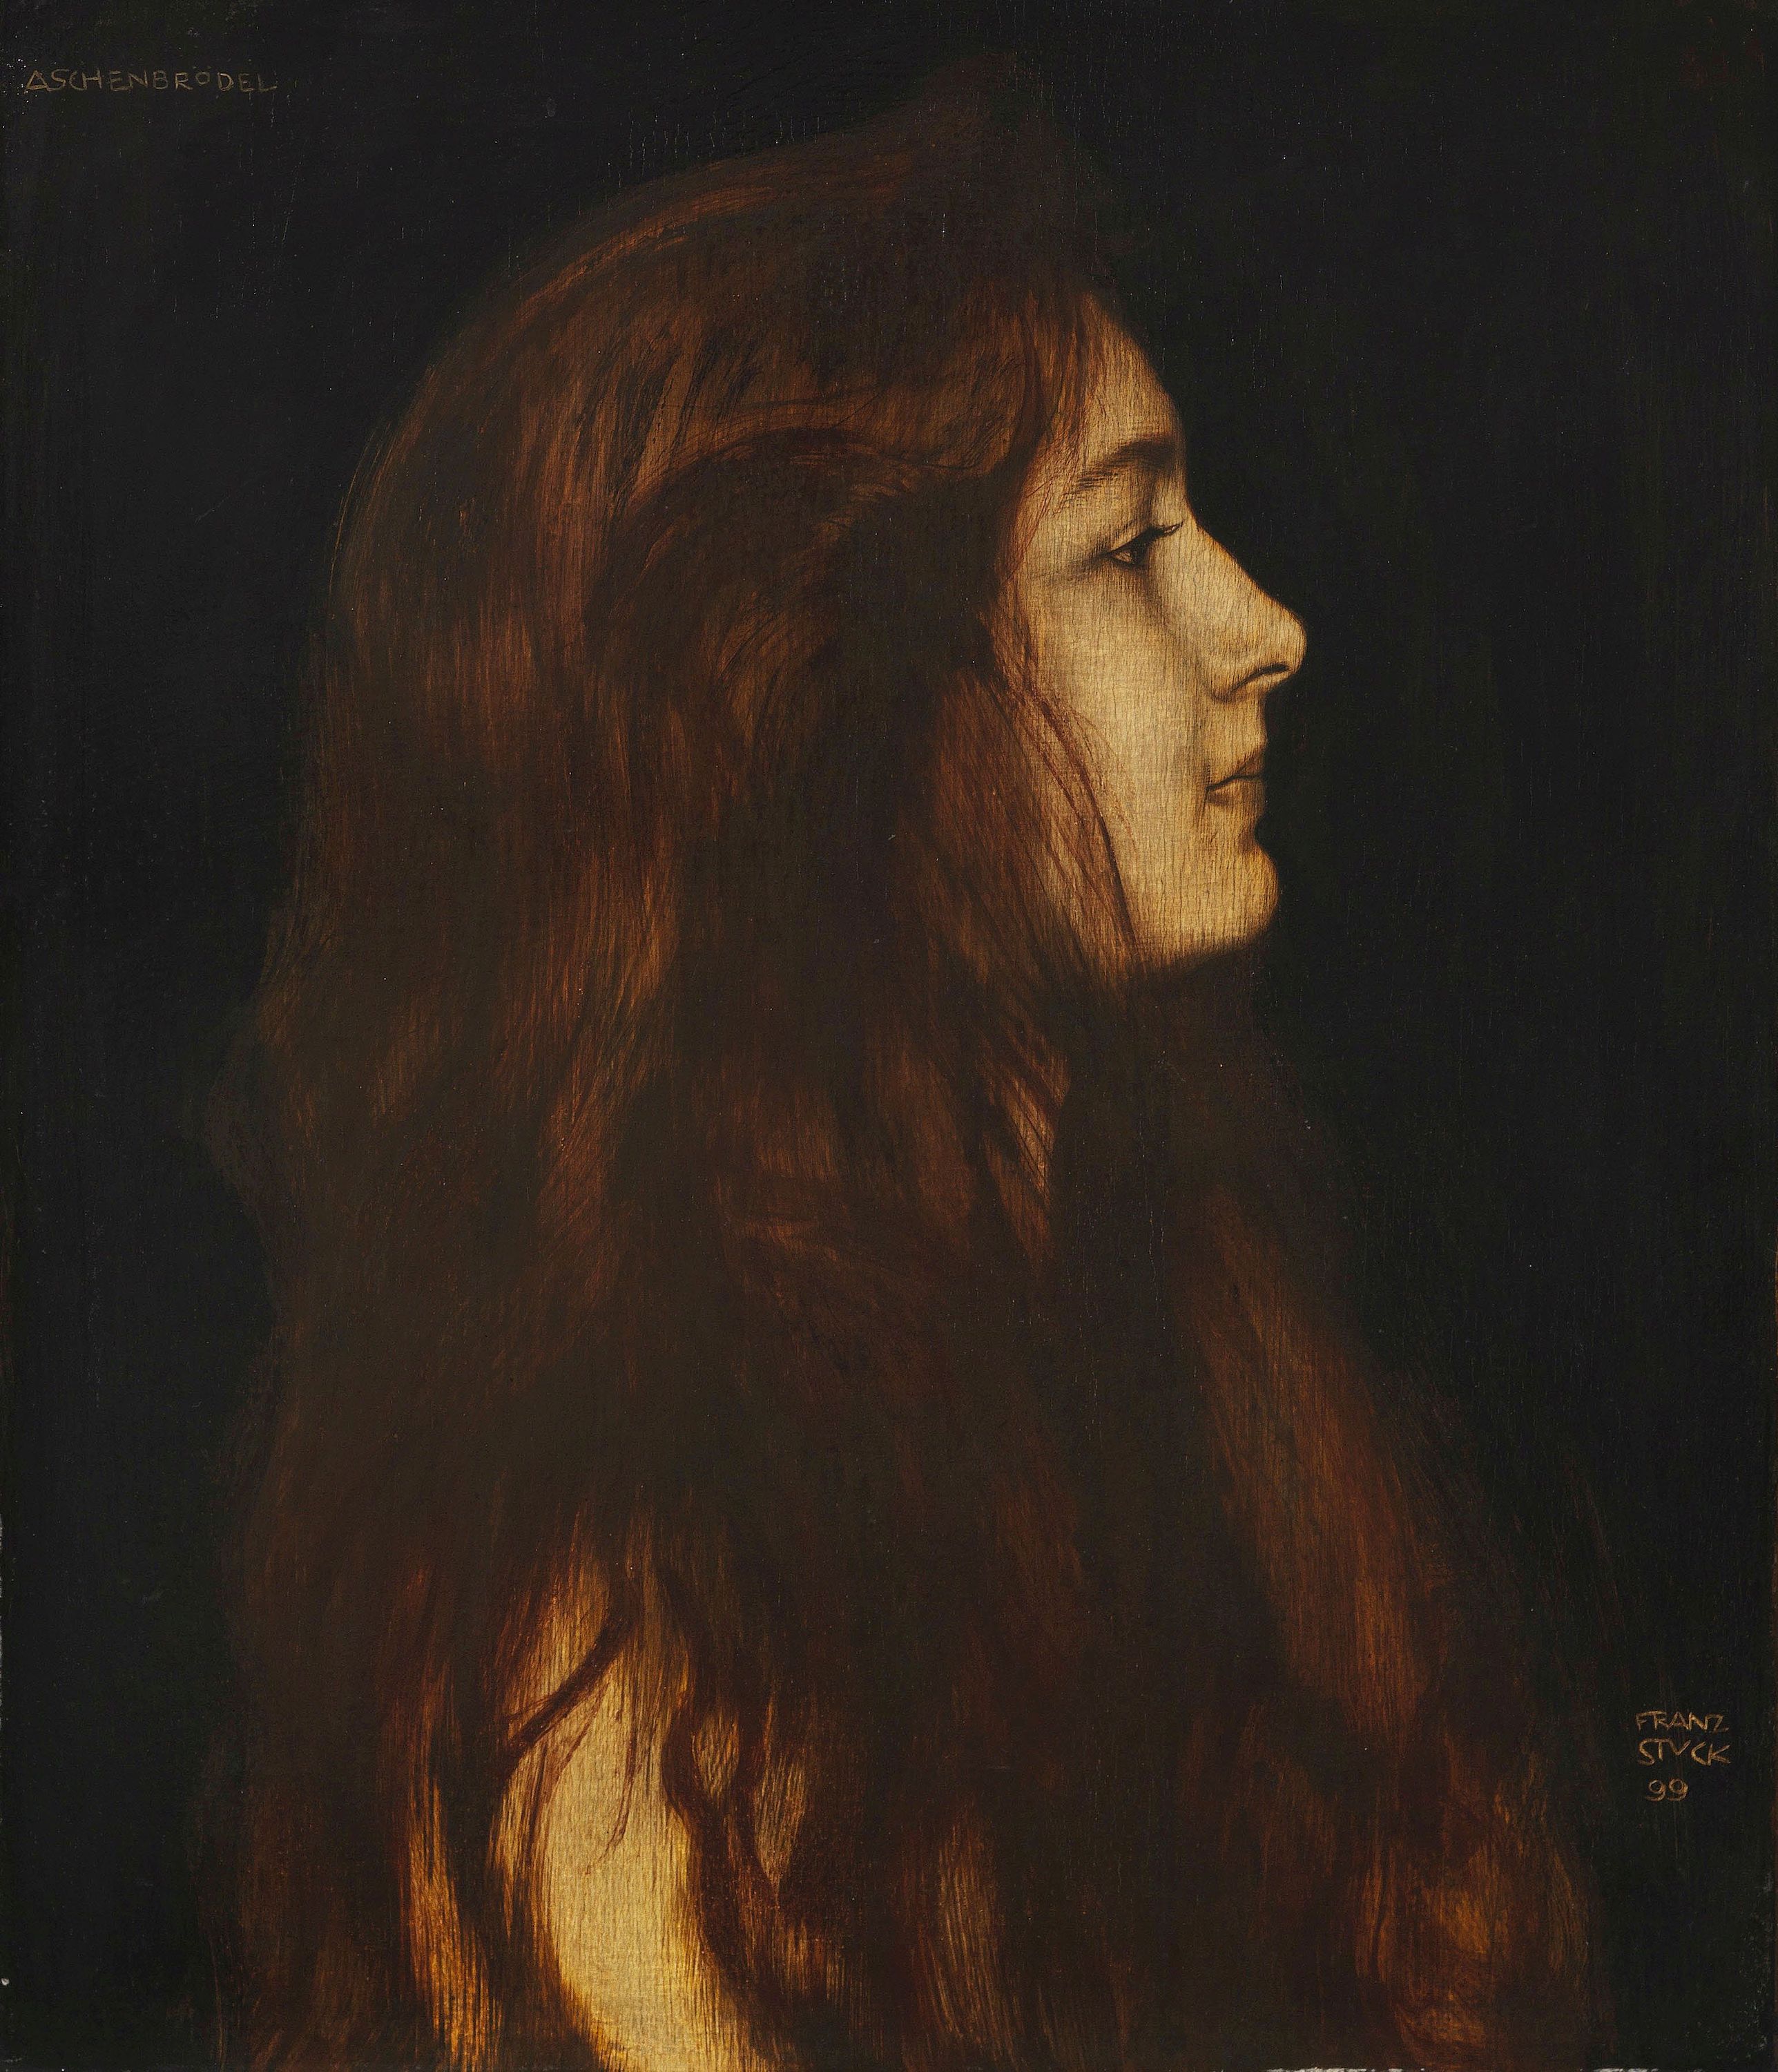 灰姑娘 by 弗朗兹 施图克 - 1899年 - 49.1 x 42.3厘米 